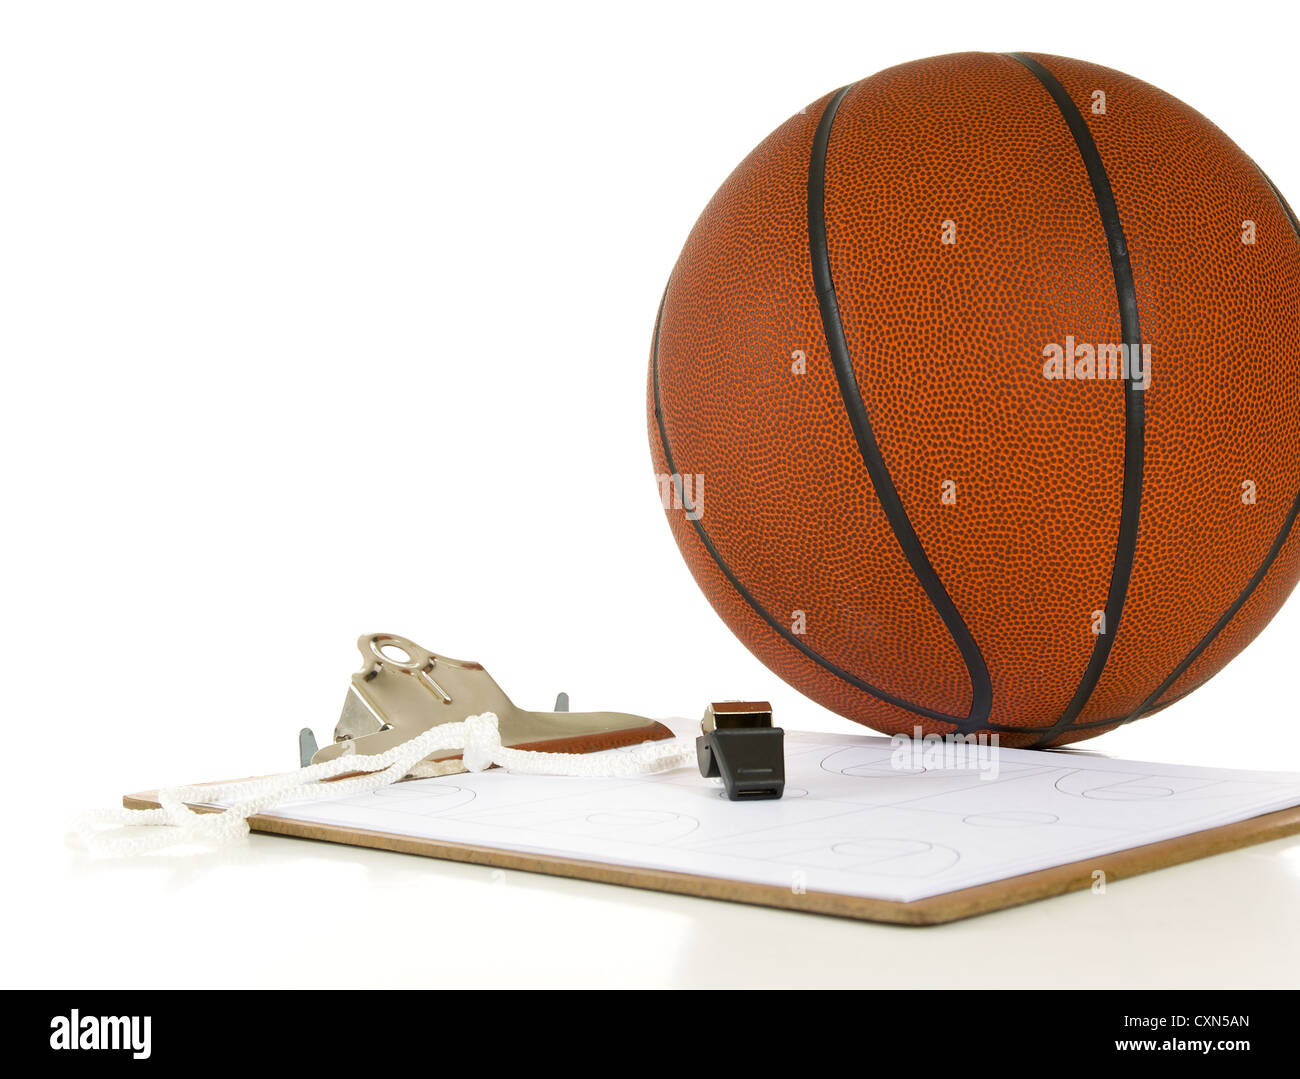 Appunti, fischio, appunti e la sfera - voci un pullman avrebbe utilizzato quando il coaching o insegnare la pallacanestro su sfondo bianco Foto Stock